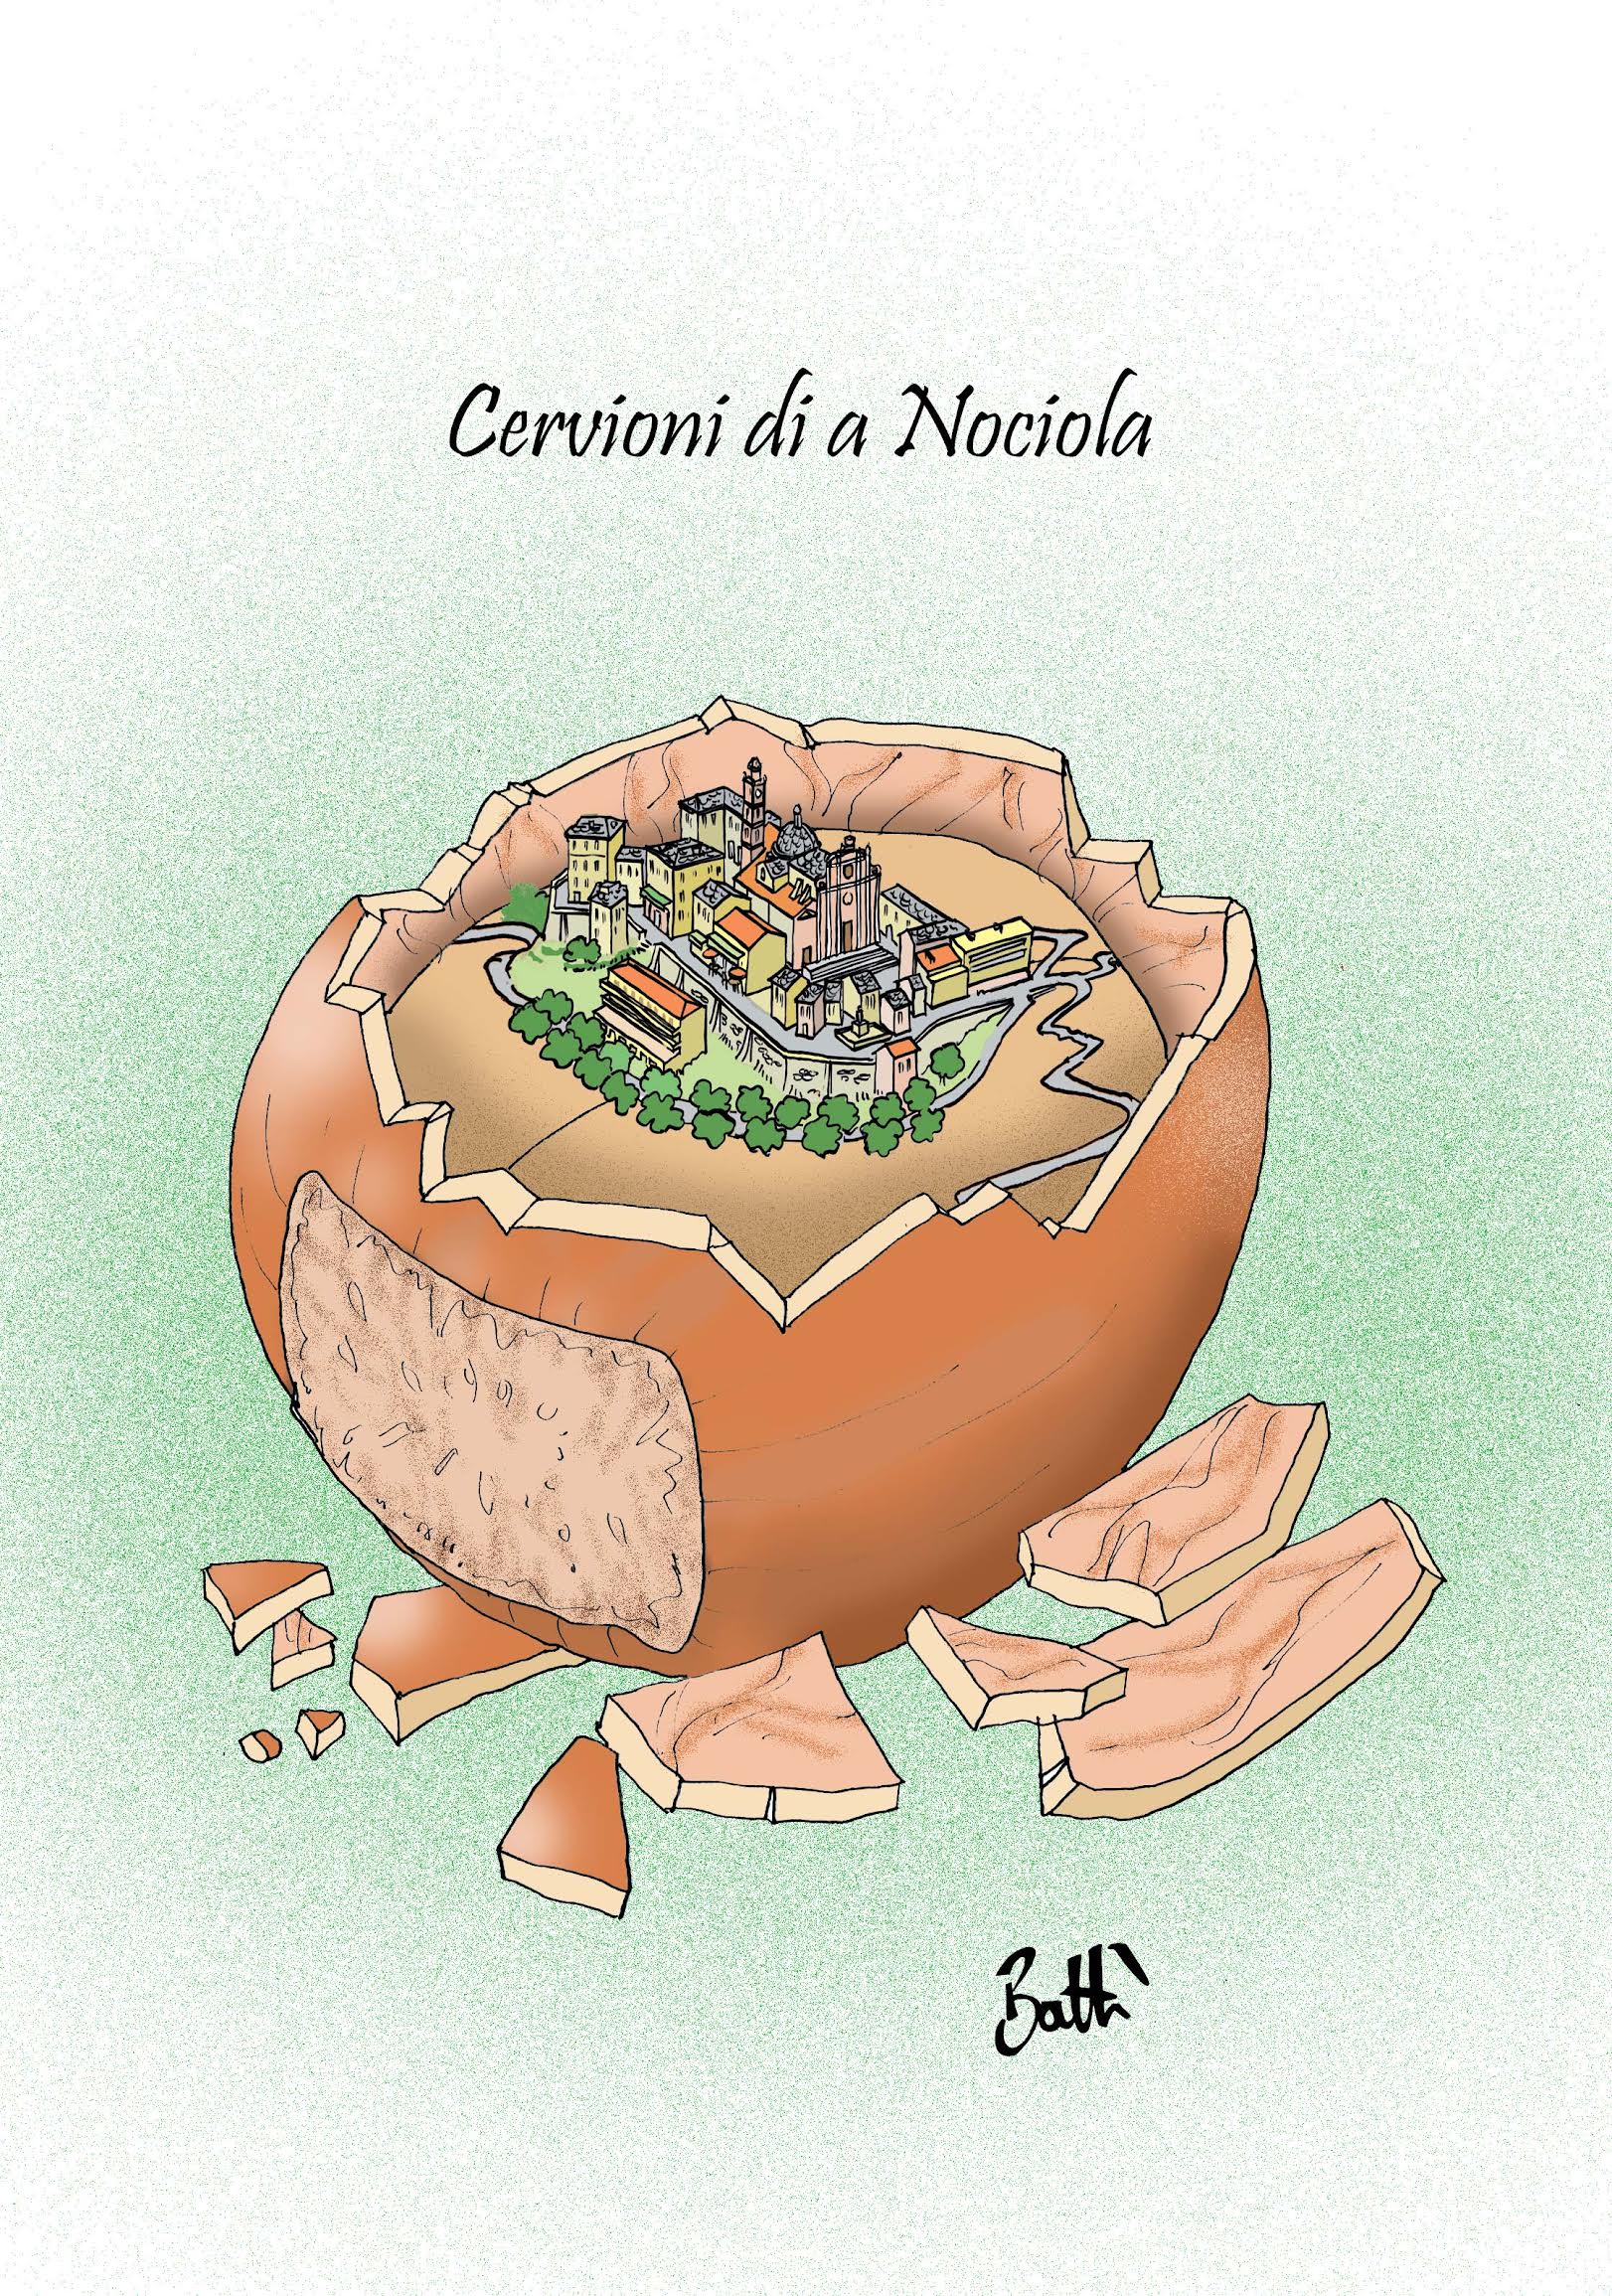 Festa di a Nuciola 2023 : Cervioni célèbre la noisette et le savoir-faire insulaire